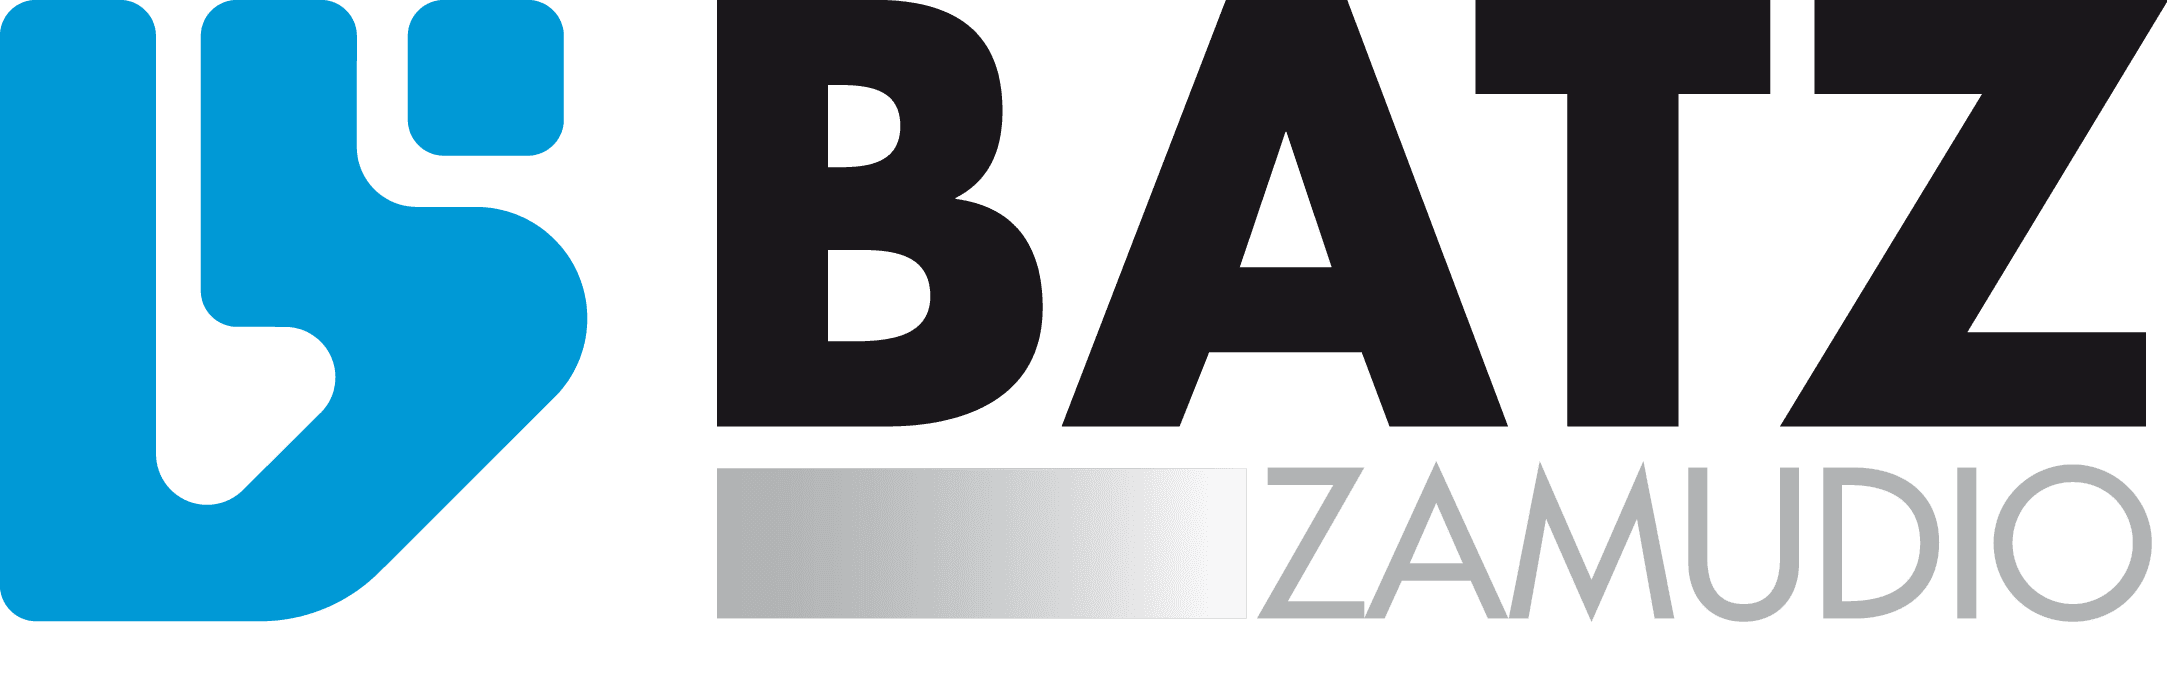 Logo de BATZ Zamudio